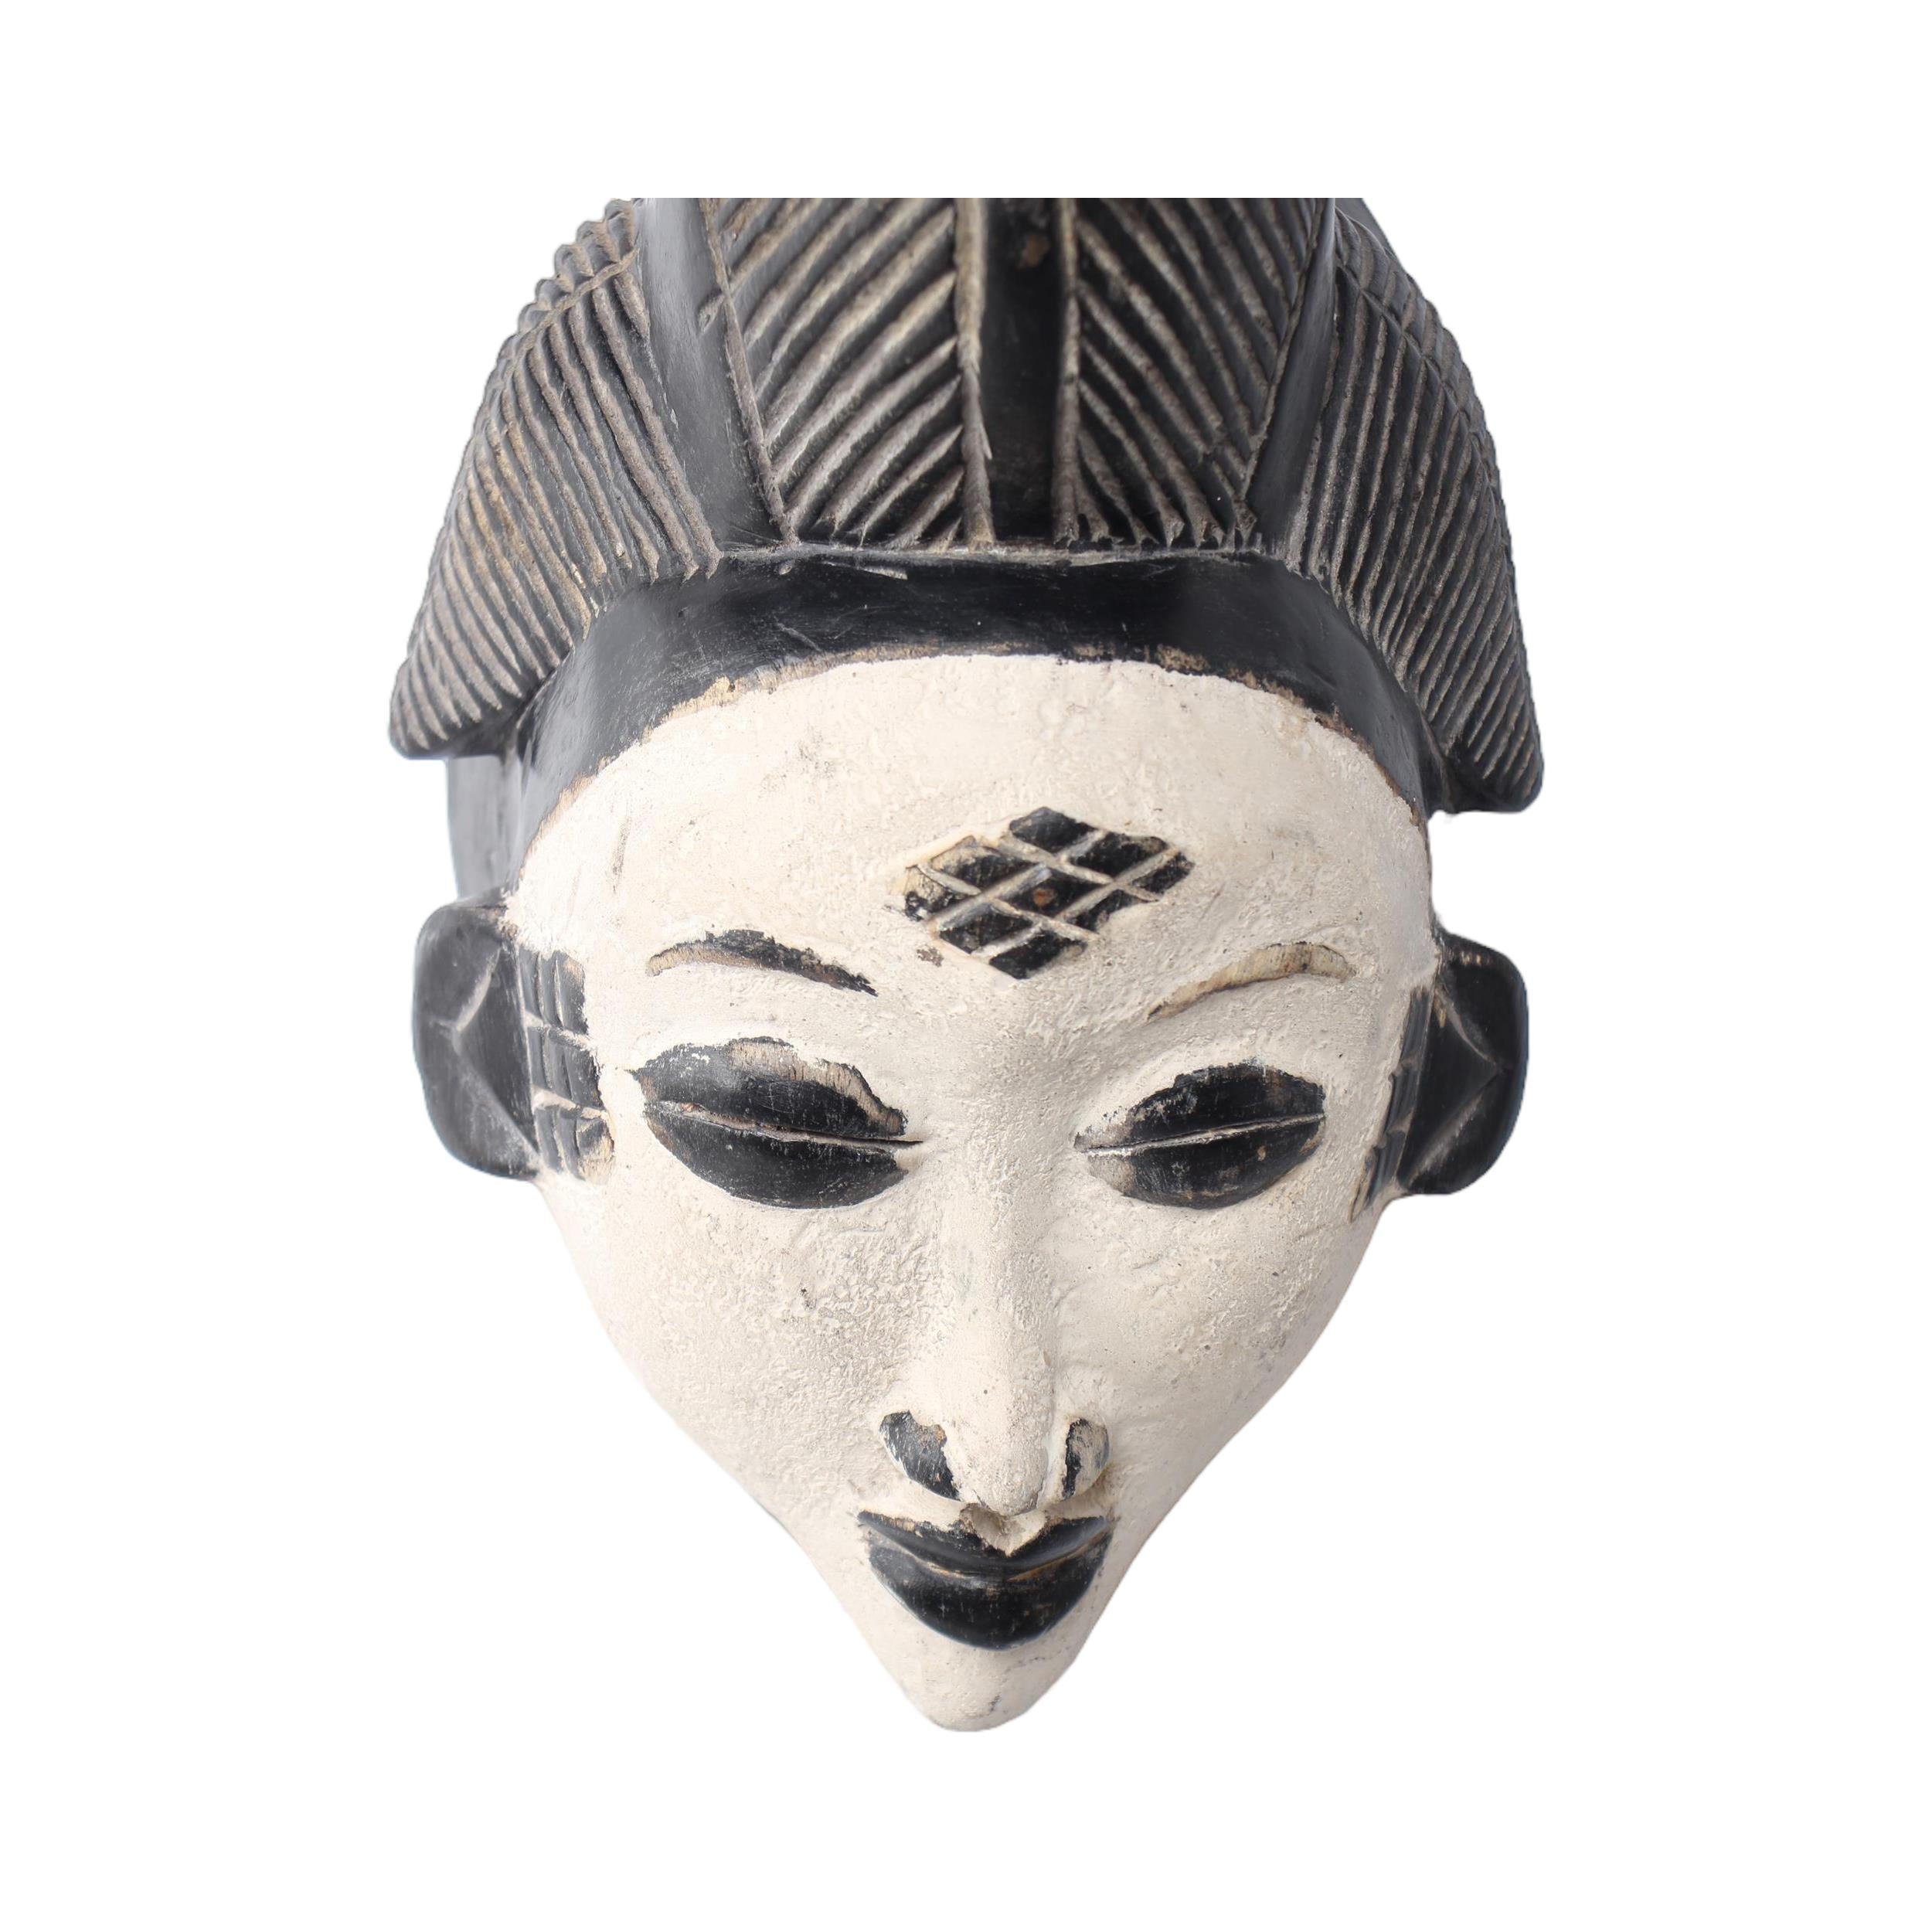 Punu Tribe Mask ~14.2" Tall - Mask